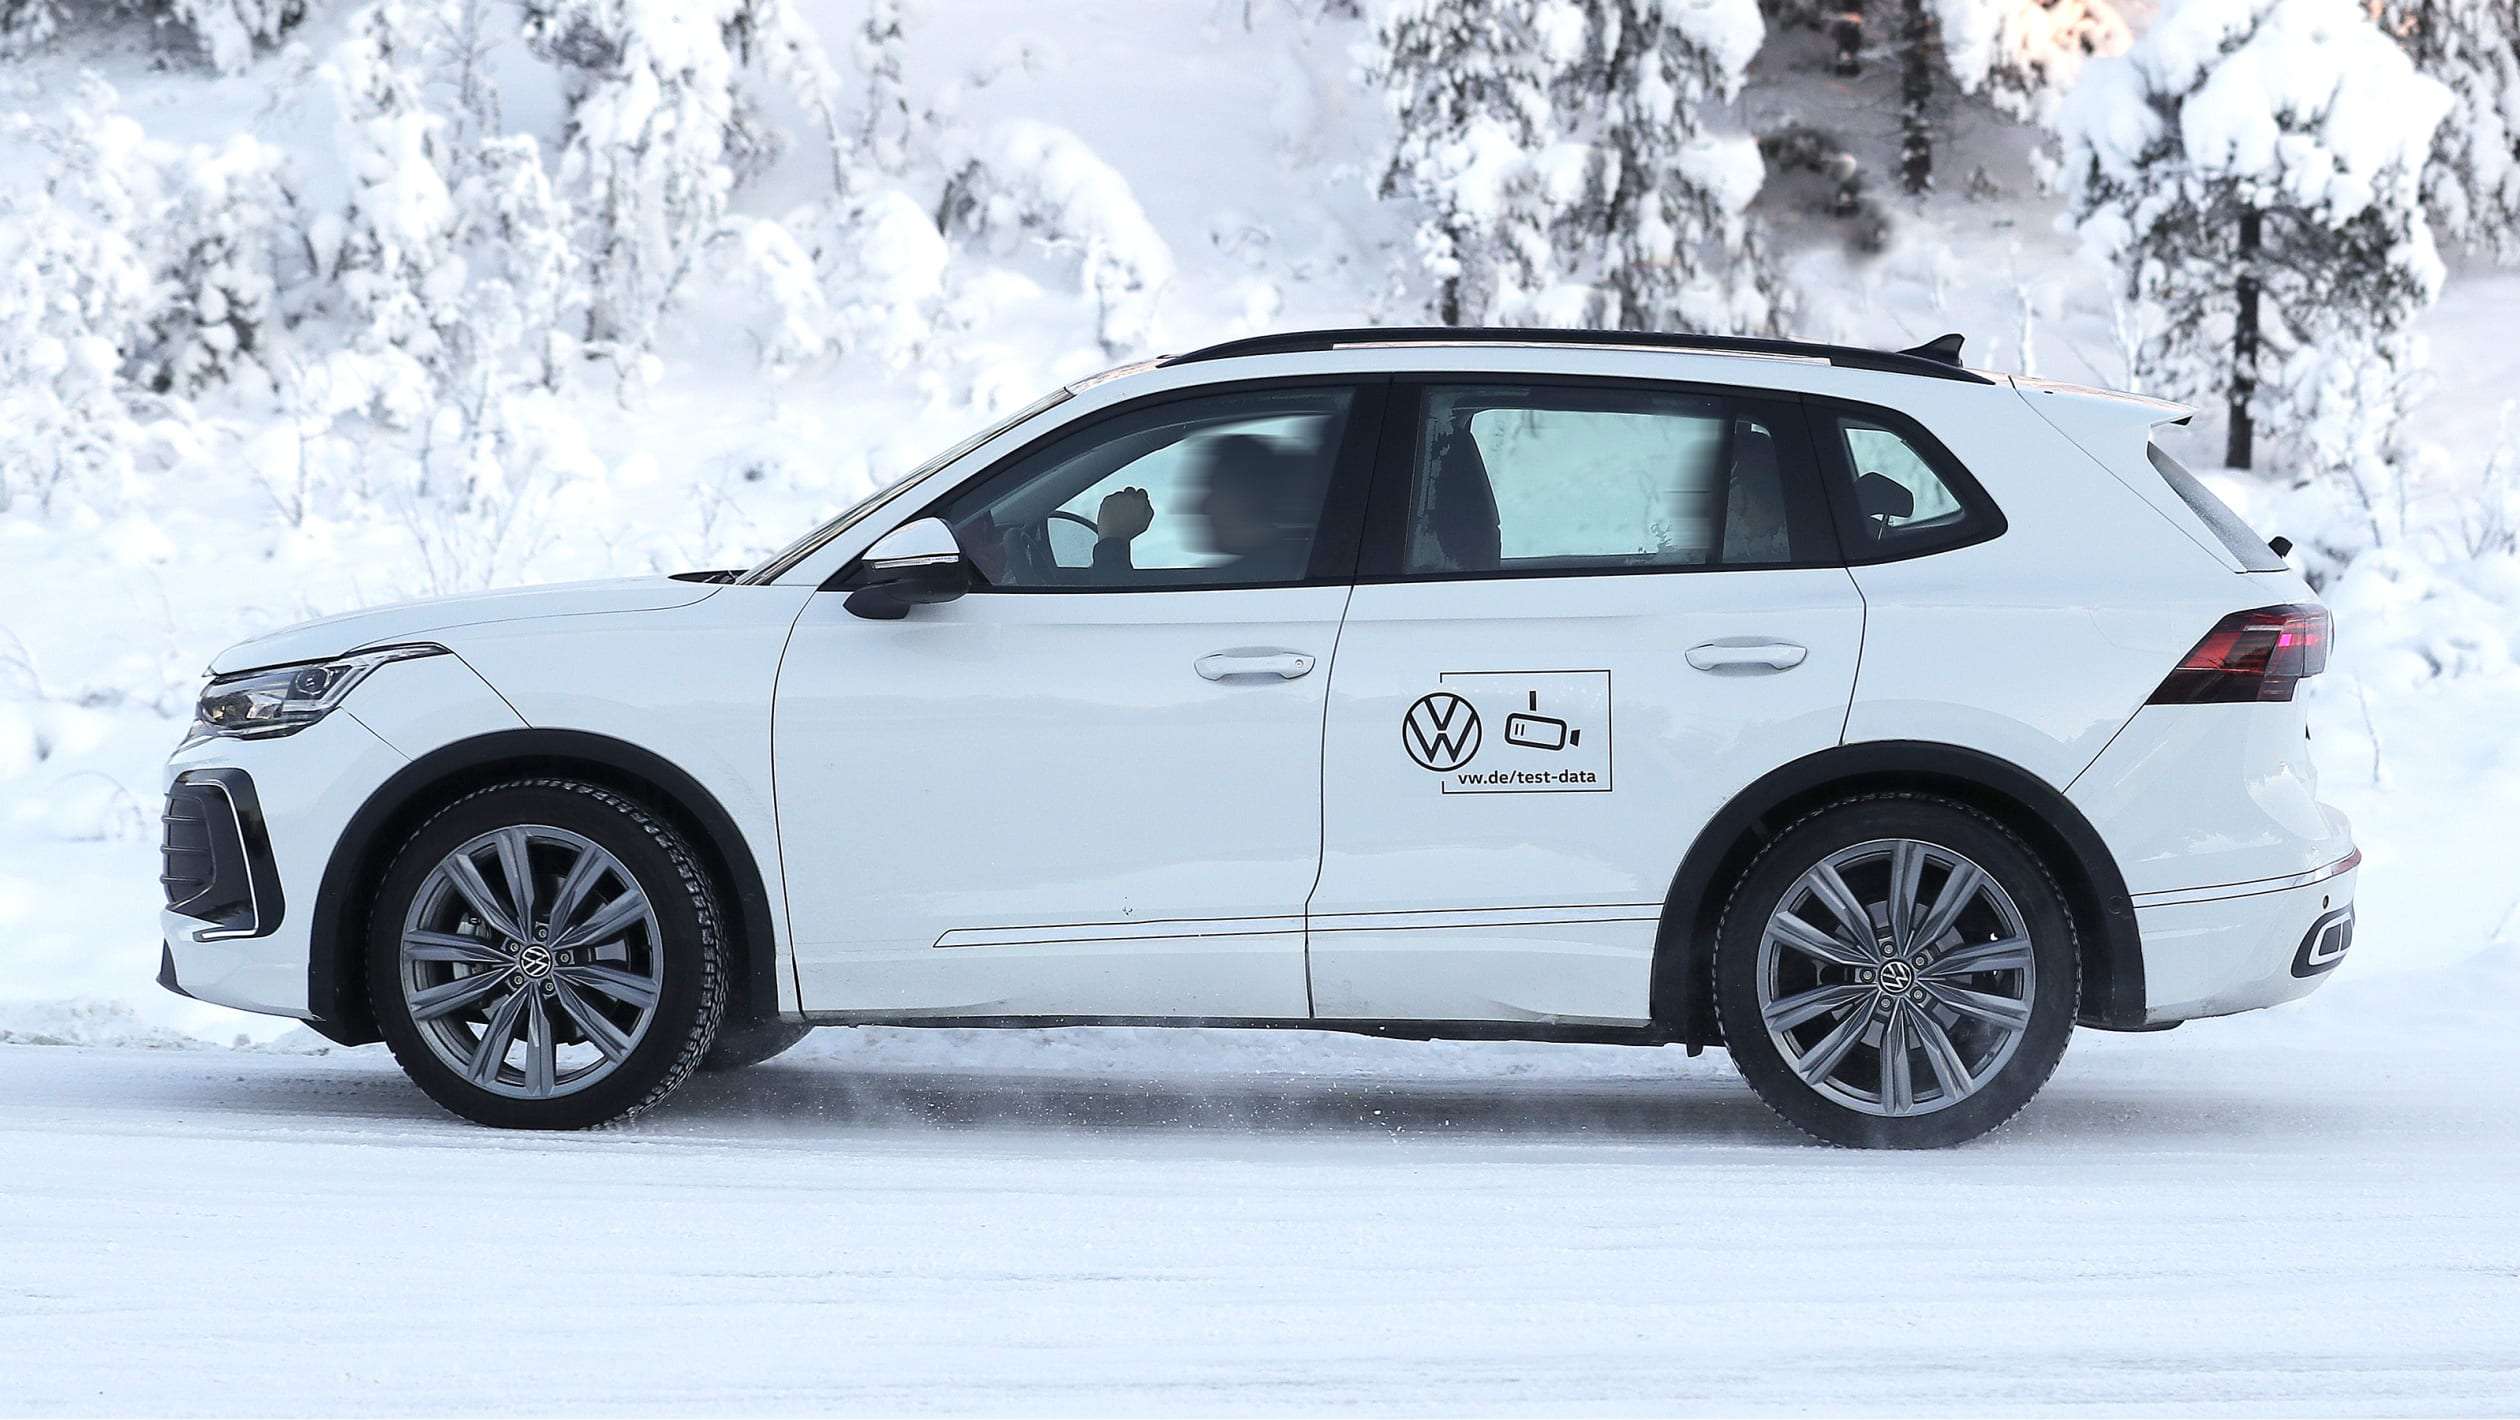 Volkswagen Tiguan (winter testing) - side